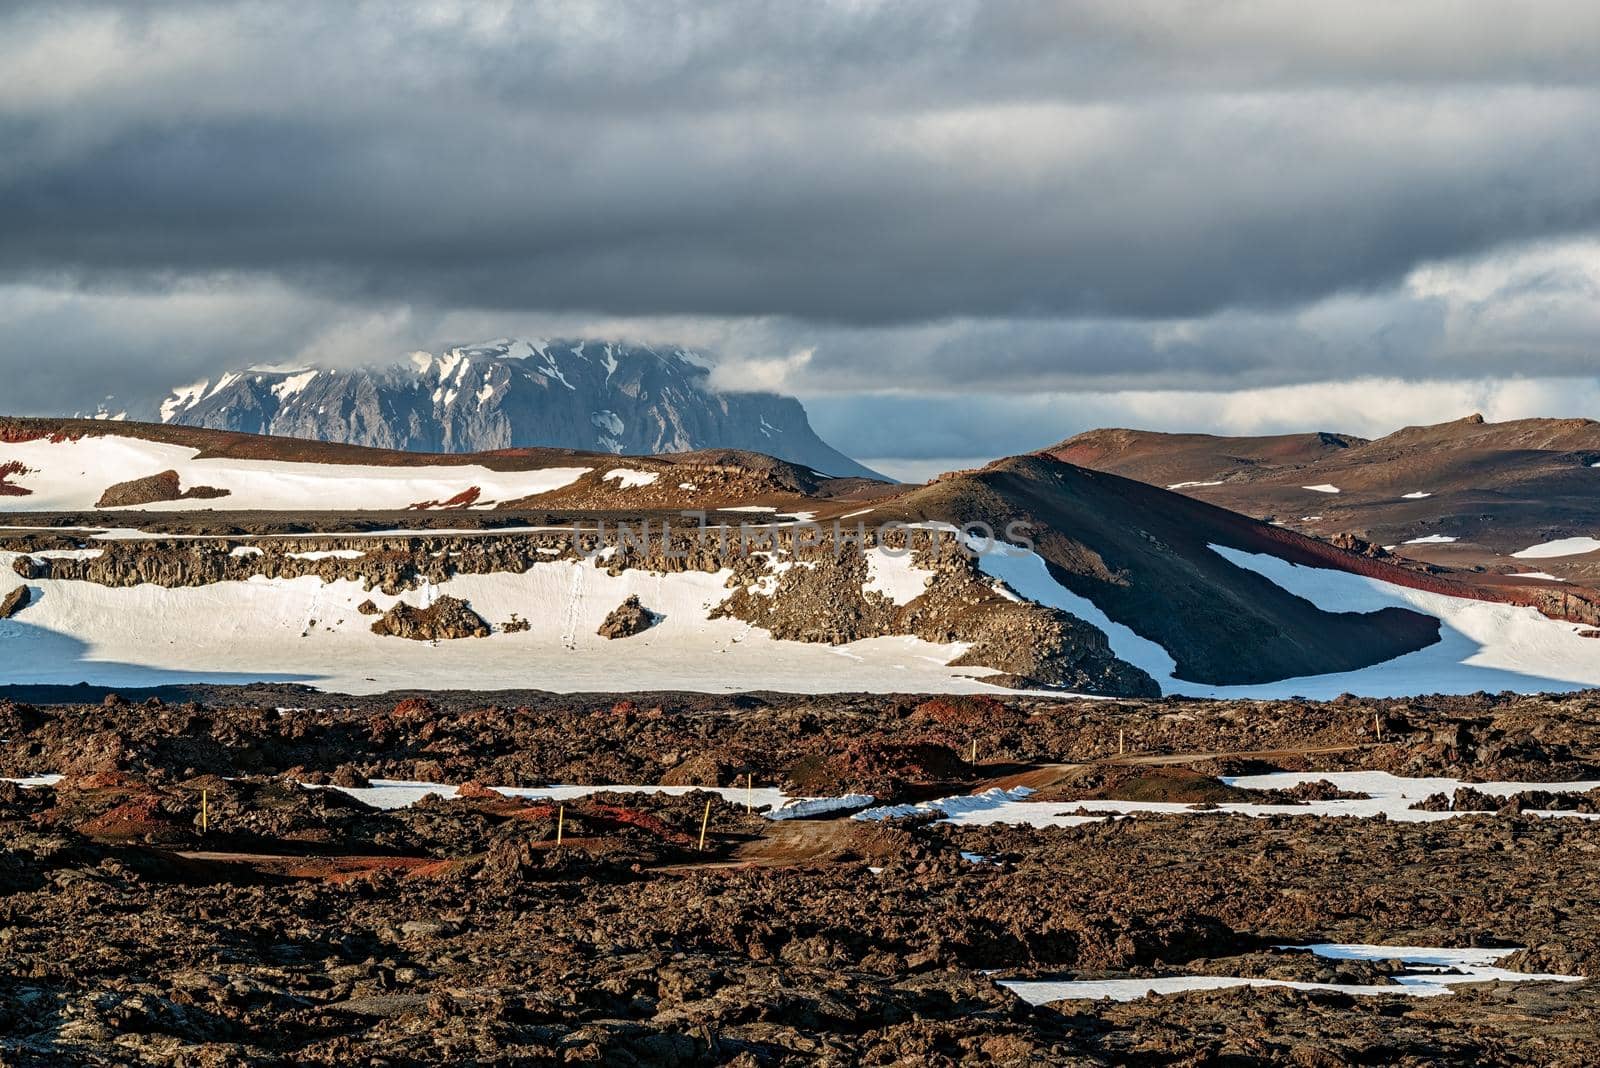 On the road to Mount Askja, Iceland by LuigiMorbidelli